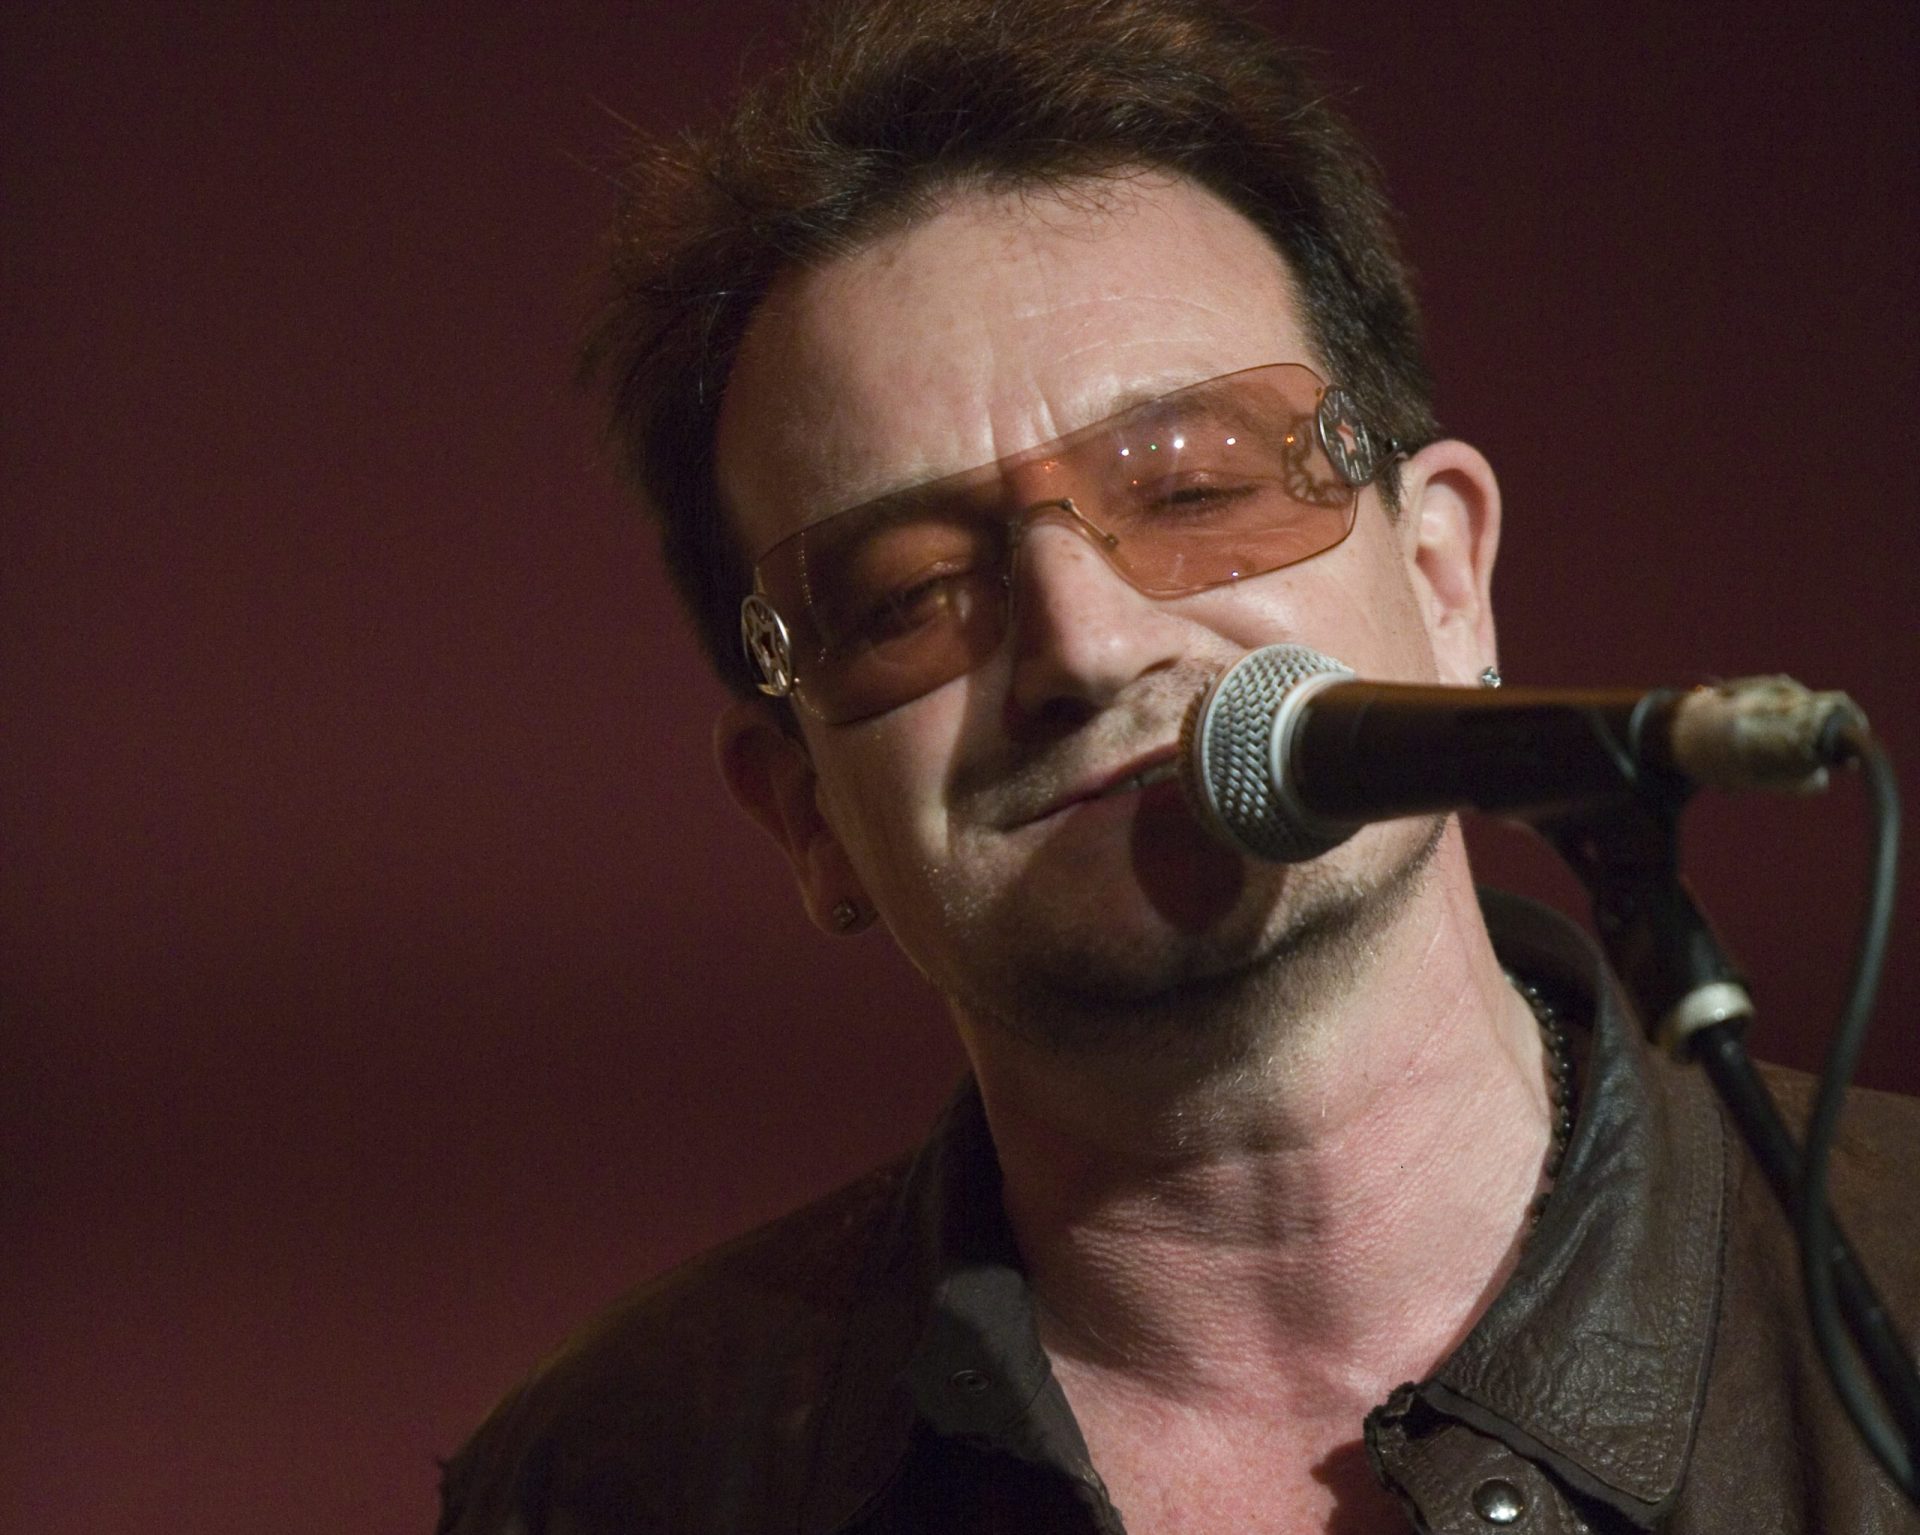 “Sinto-me privilegiado por ter testemunhado o maior período de paz e prosperidade de todos os tempos” na Europa, diz Bono